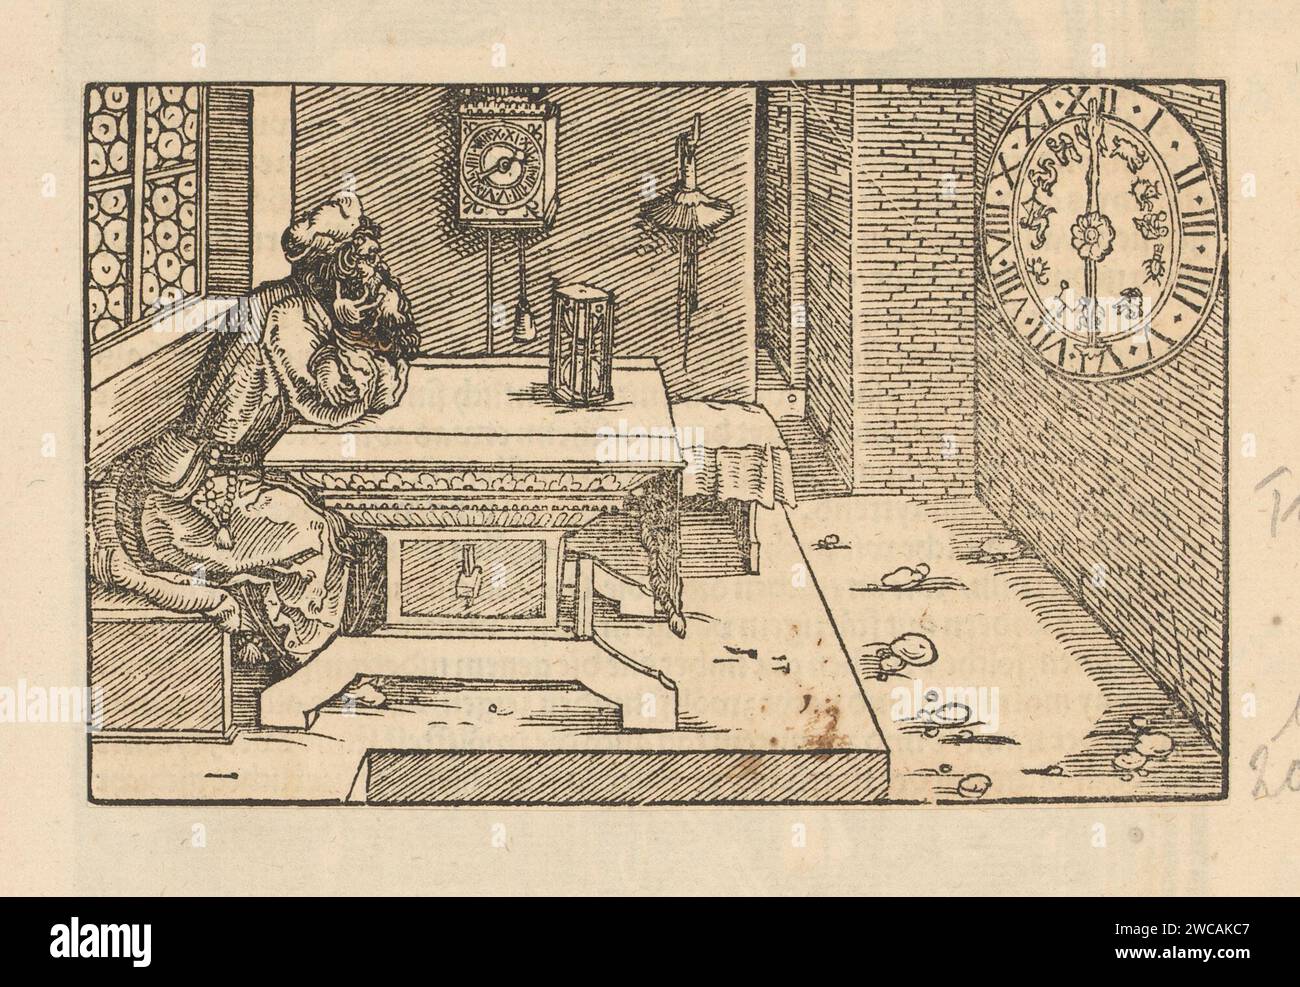 Vecchio guarda con la testa nelle mani una clessidra e orologi da parete, Anonymous, Hans Weiditz (II), 1514 - 1532 stampa l'uomo rappresenta la transitorietà. La stampa fa parte di un album. orologio di stampa con carta letterpress. Scene che simboleggiano "Vanitas" Foto Stock